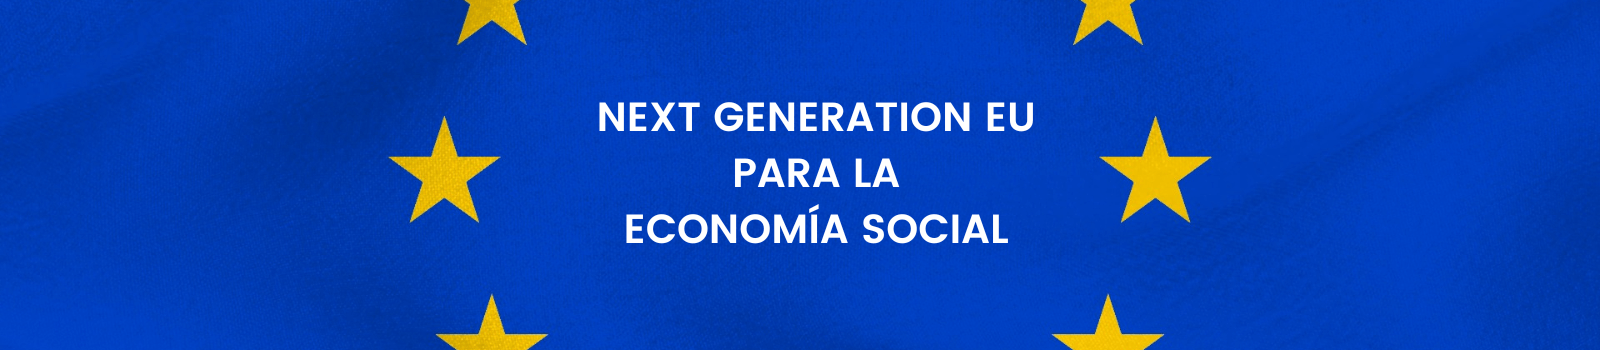 Banner fondos Next Generation EU